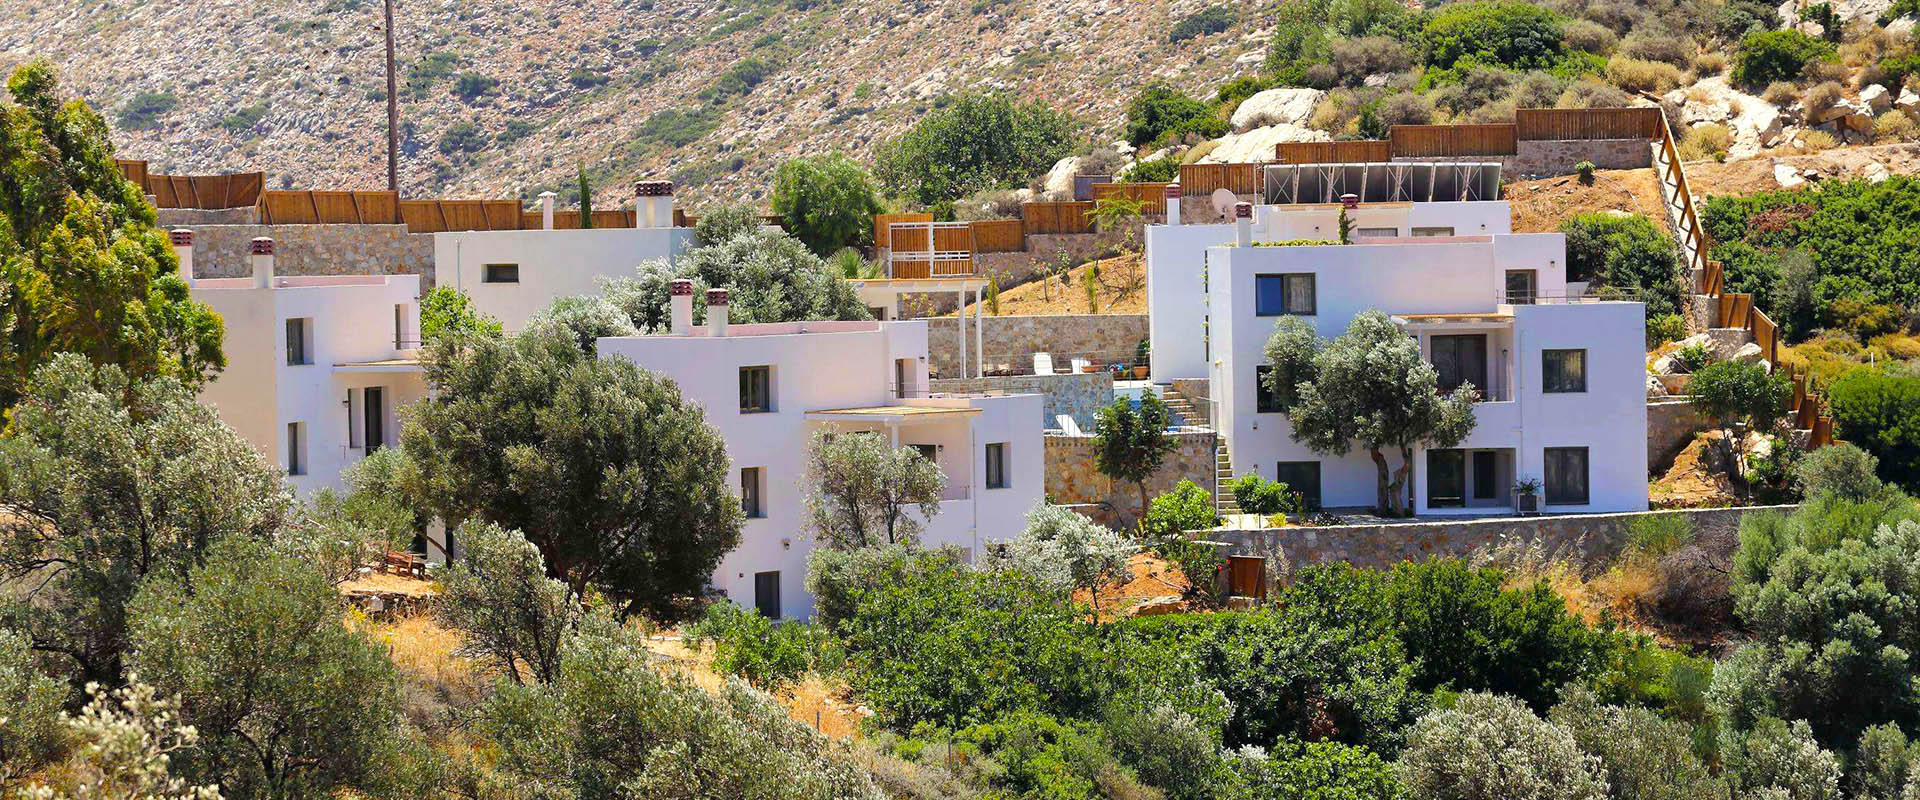 Kreta Ökotourismus Urlaub: umweltfreundliche Ferienhäuser Villen